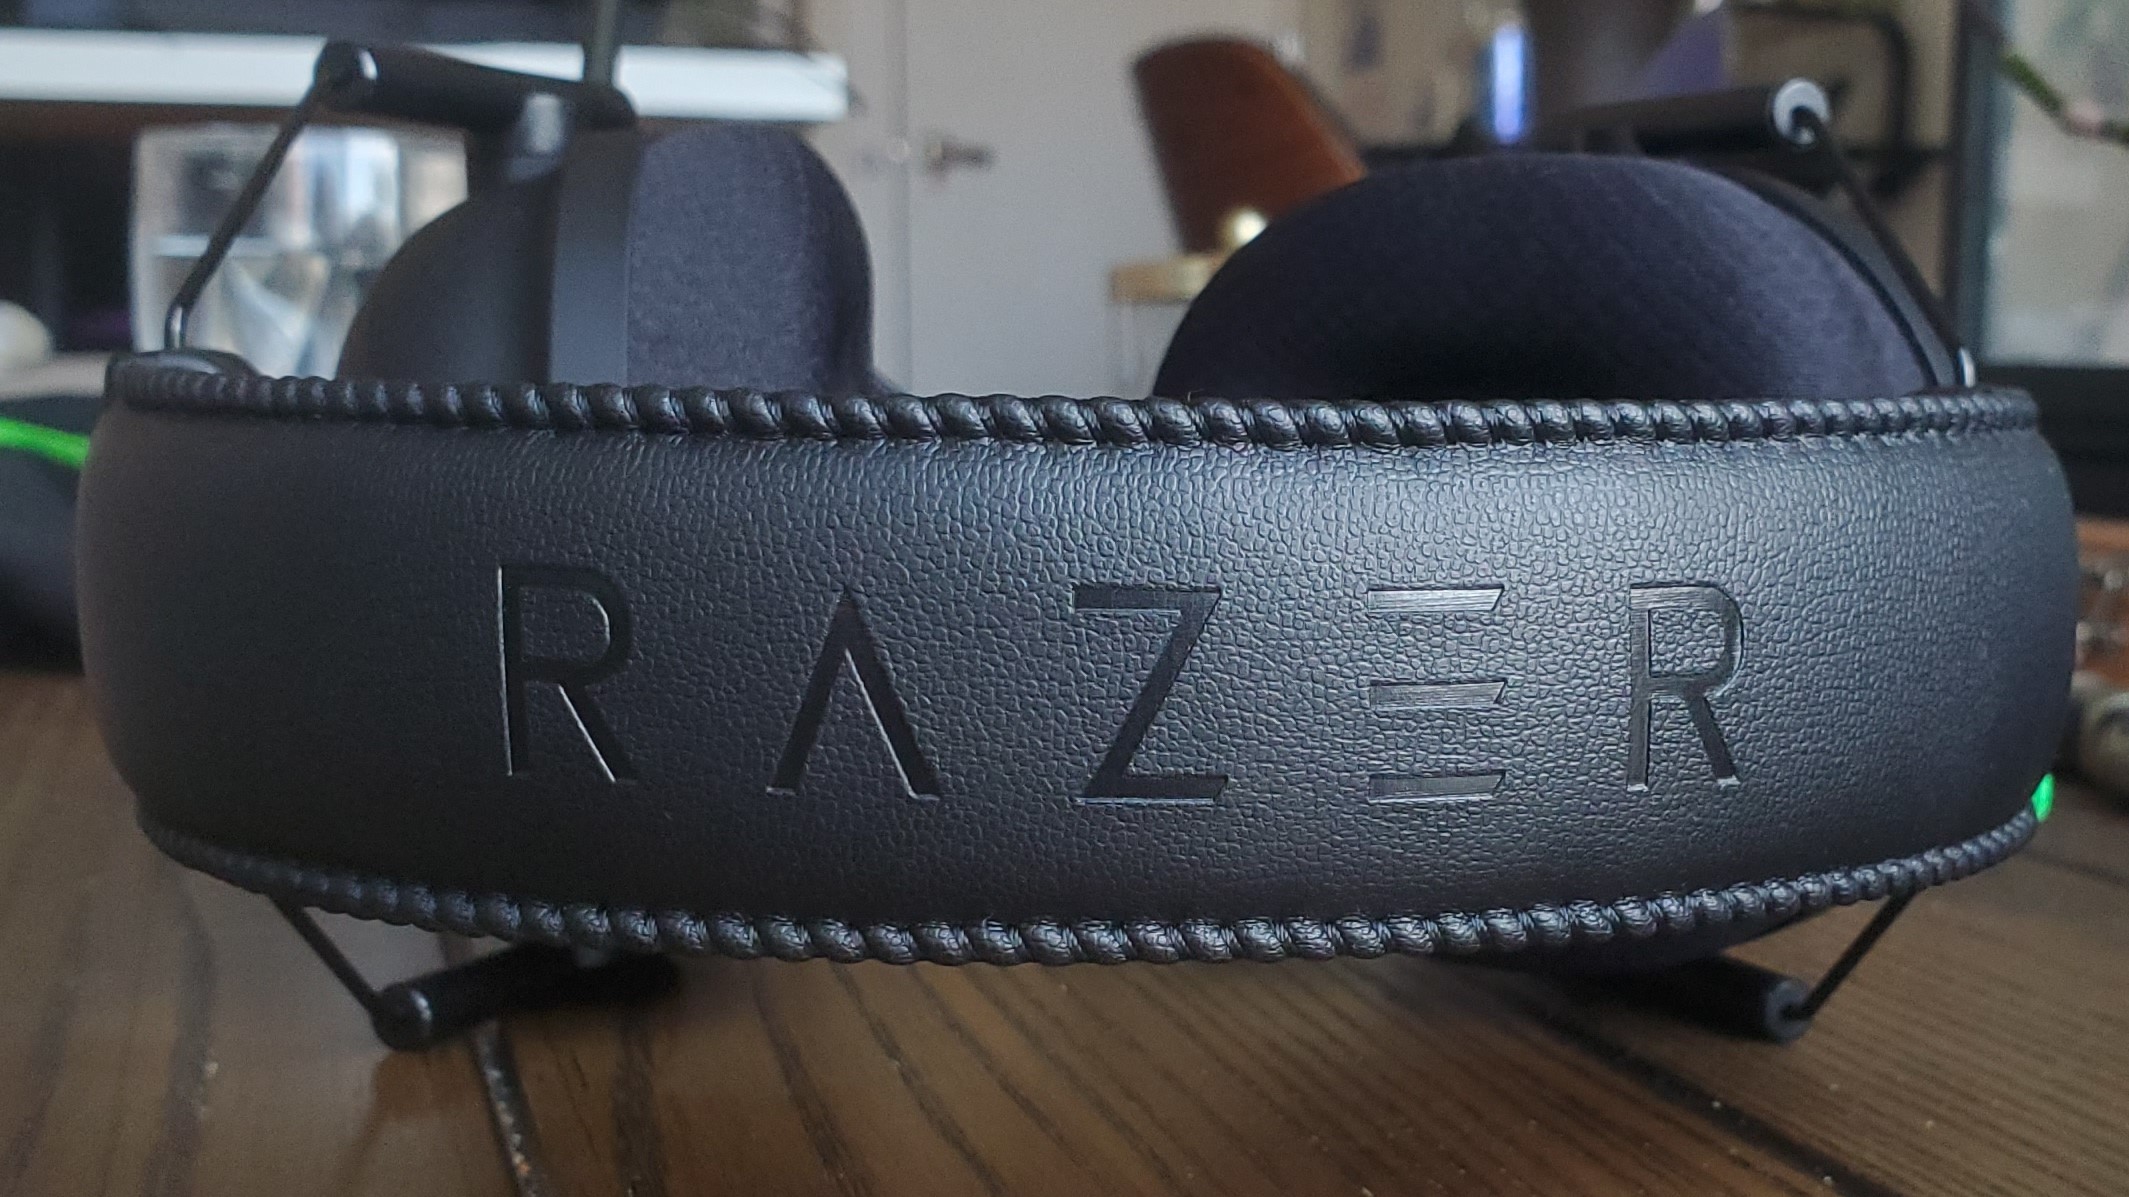 Razer BlackShark V2 gaming headset review